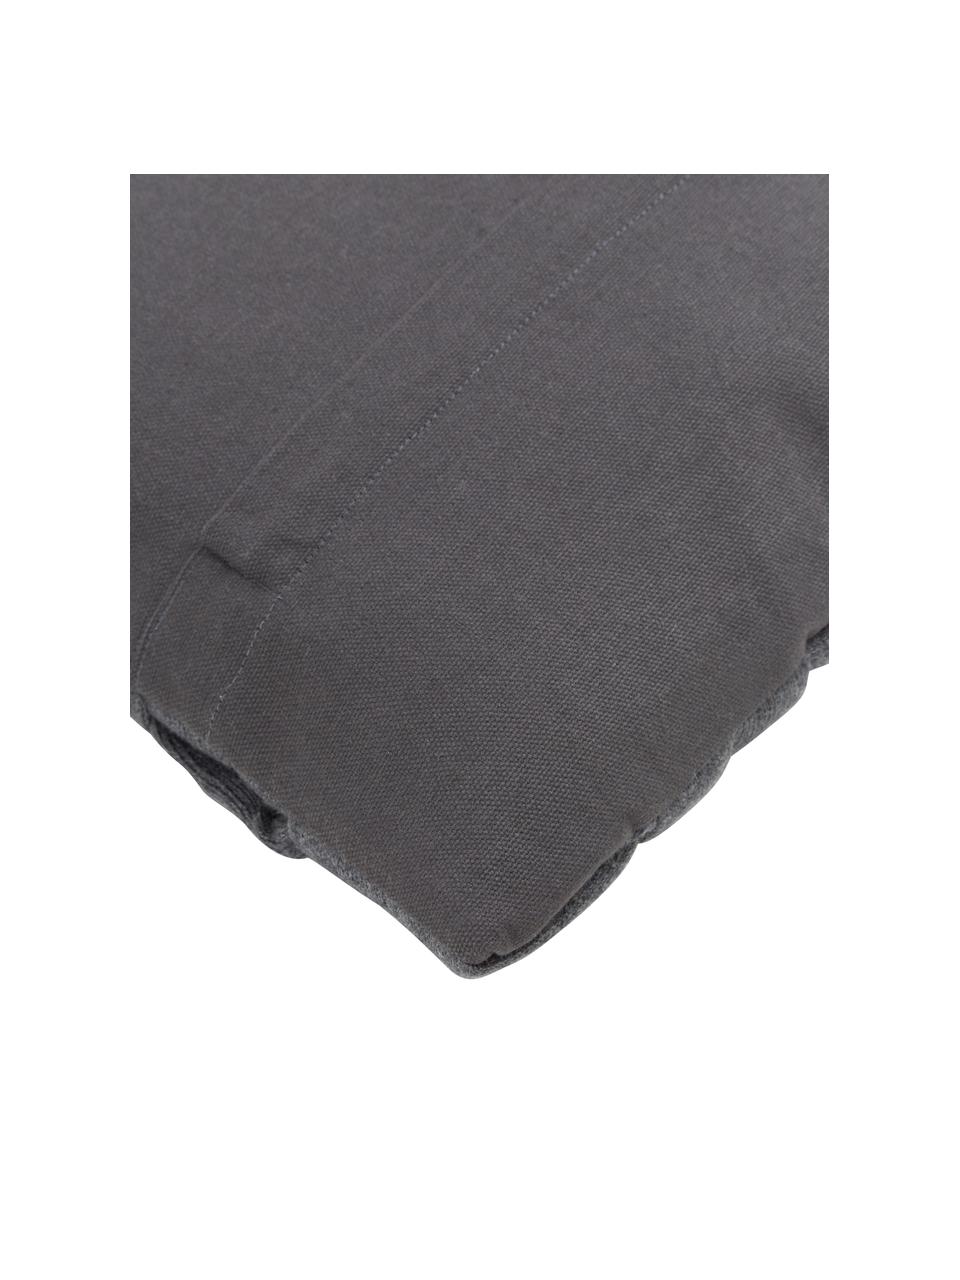 Federa arredo intrecciata color grigio scuro Norman, Grigio, Larg. 30 x Lung. 50 cm